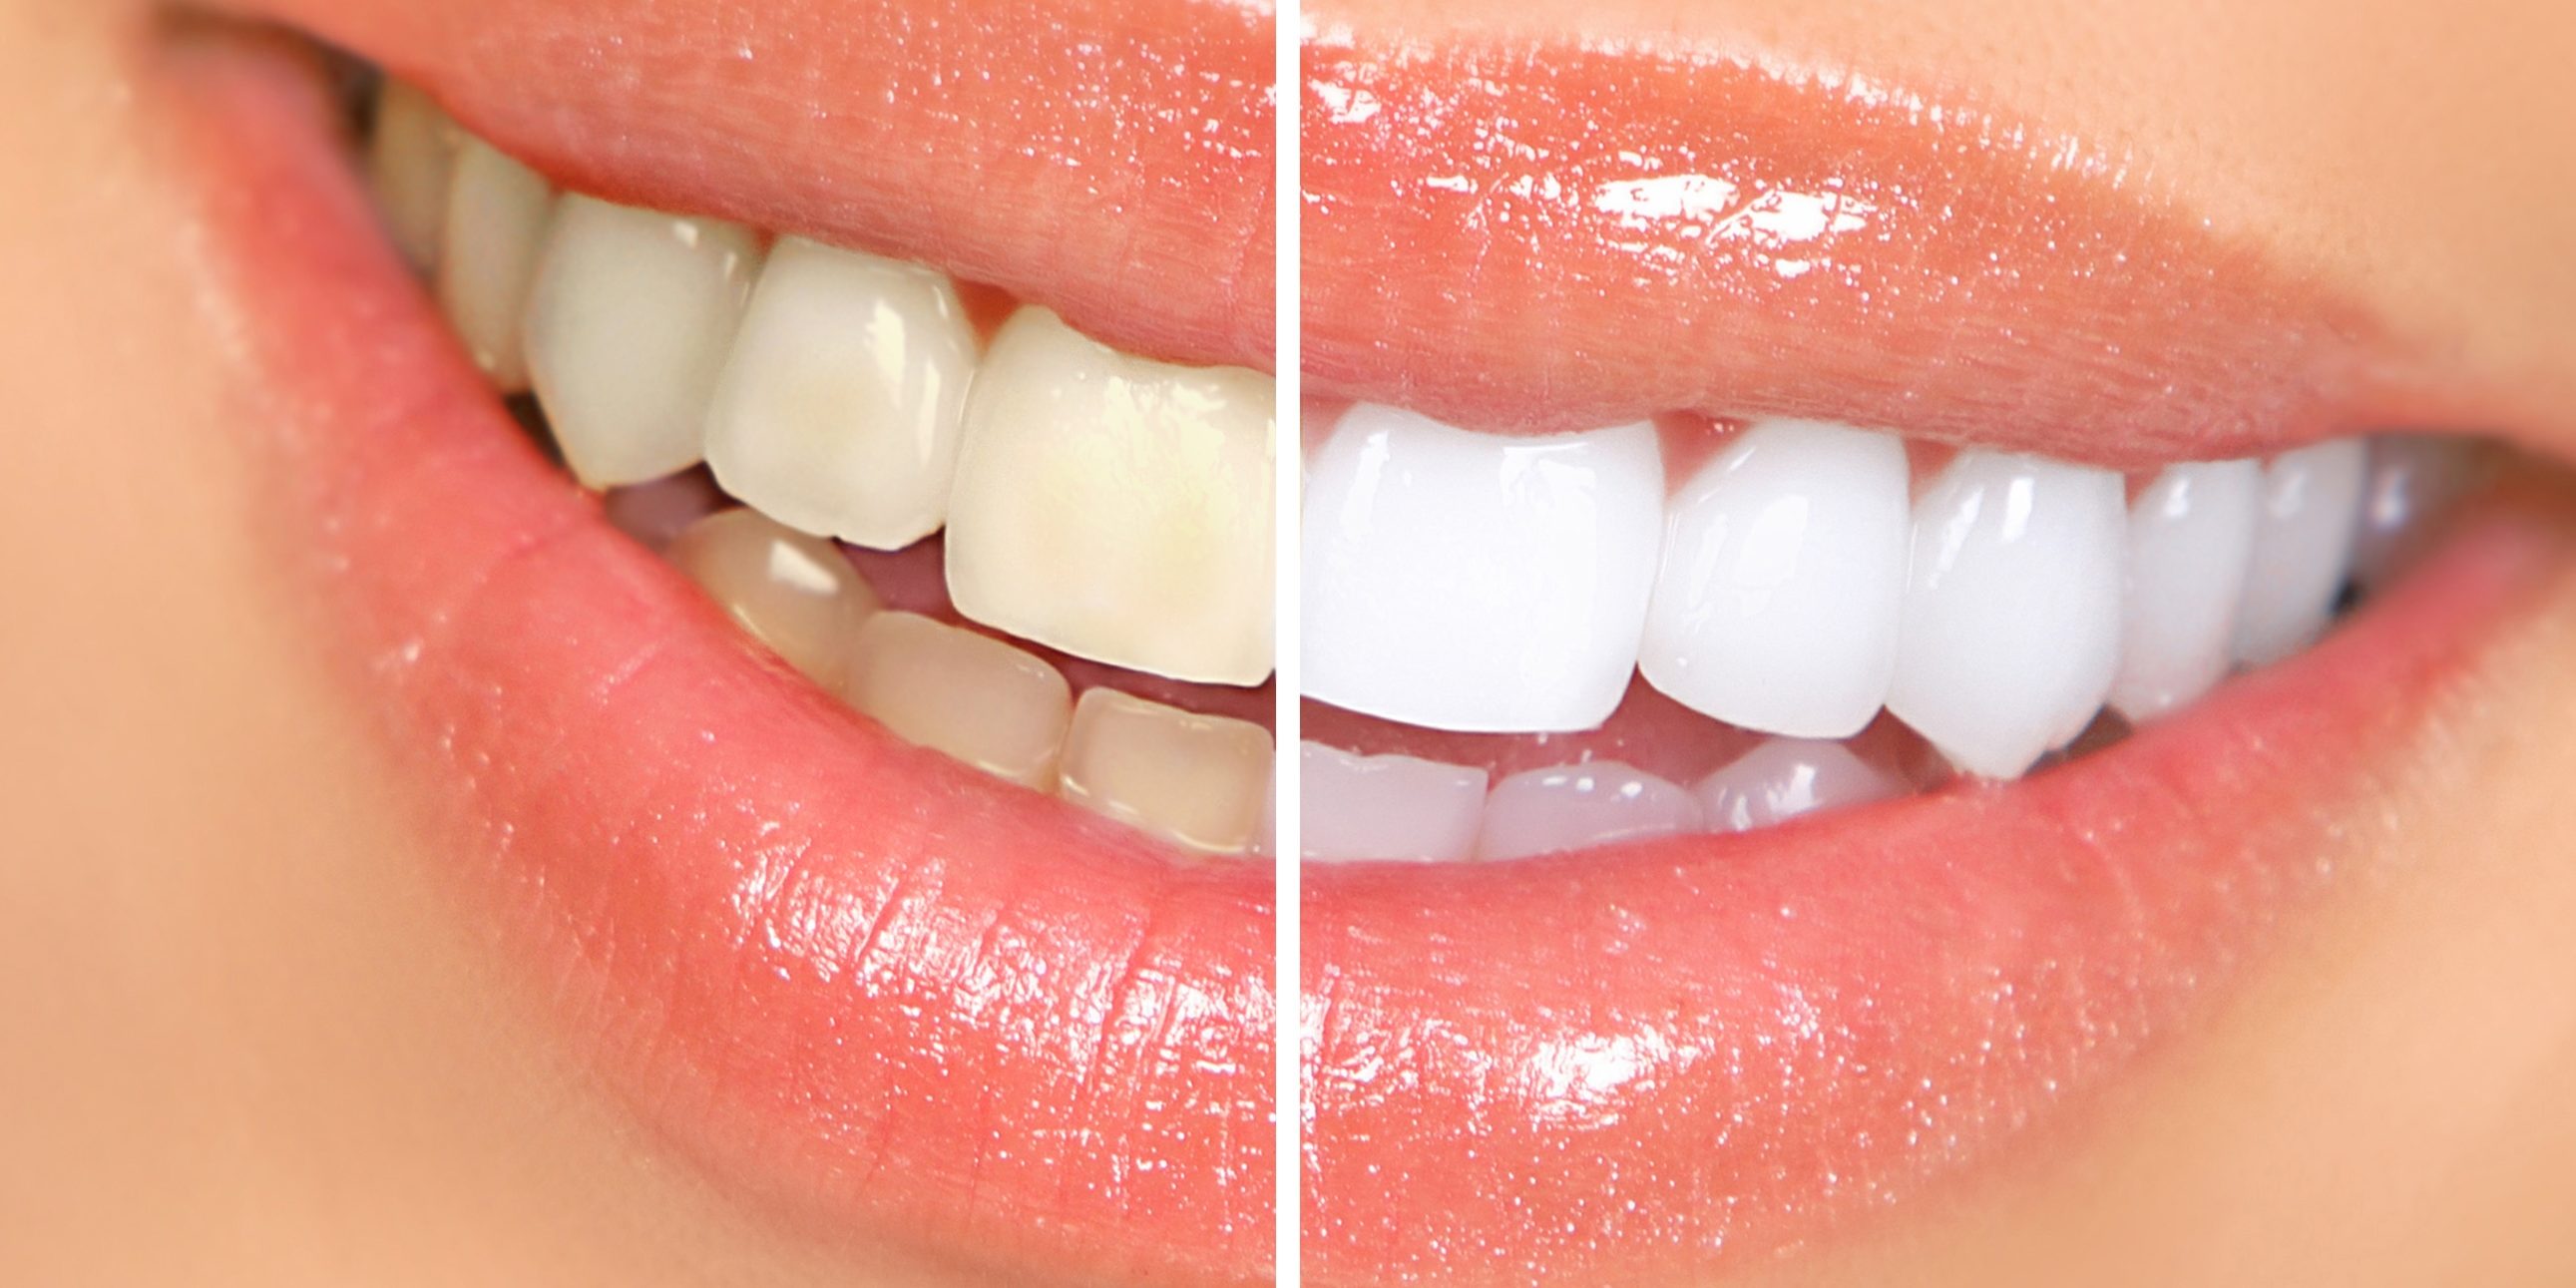 Unterschiede zwischen der häuslichen und zahnärztlichen Zahnaufhellung